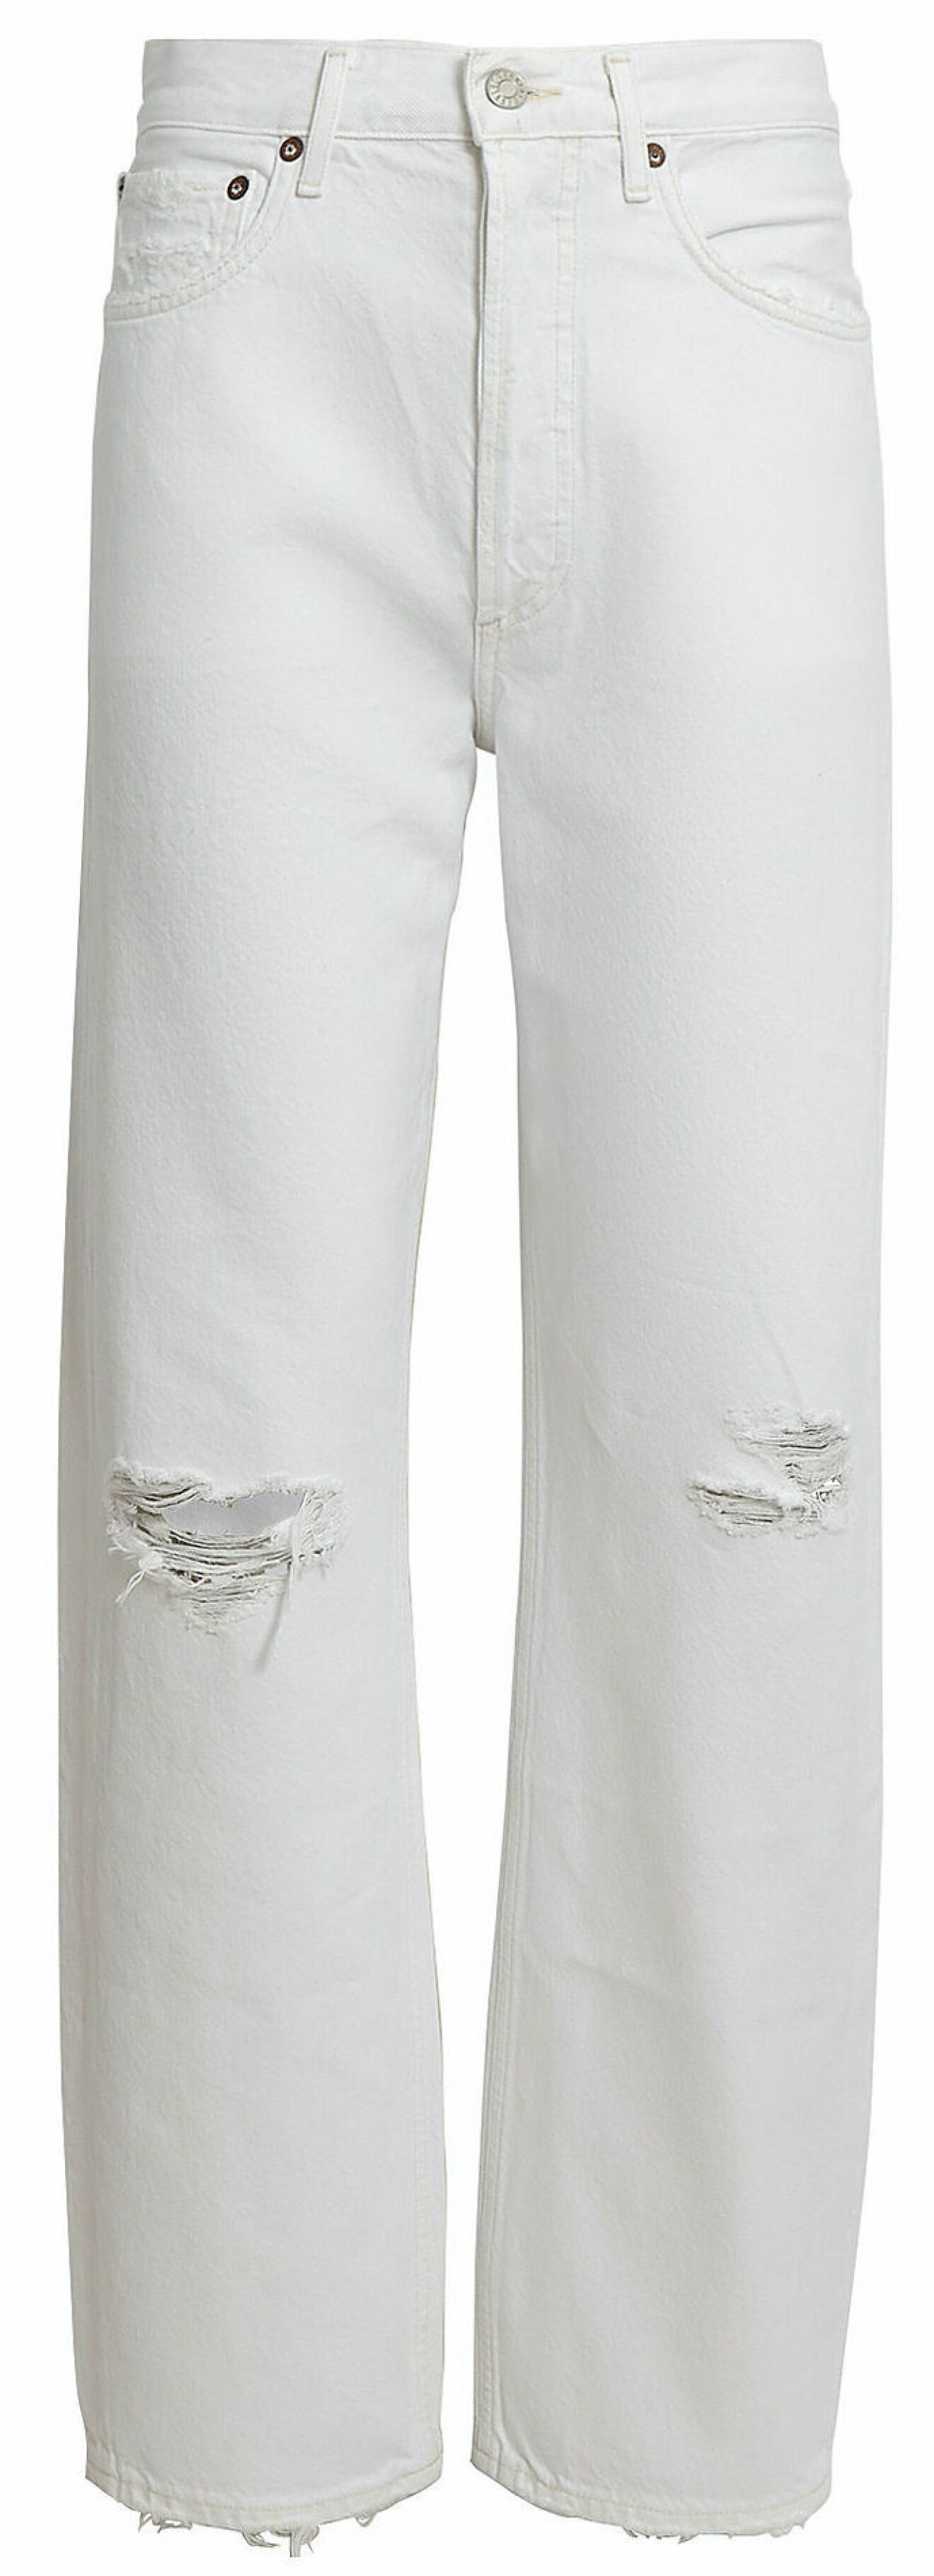 Vita jeans från Agolde med dekorativa håldetaljer